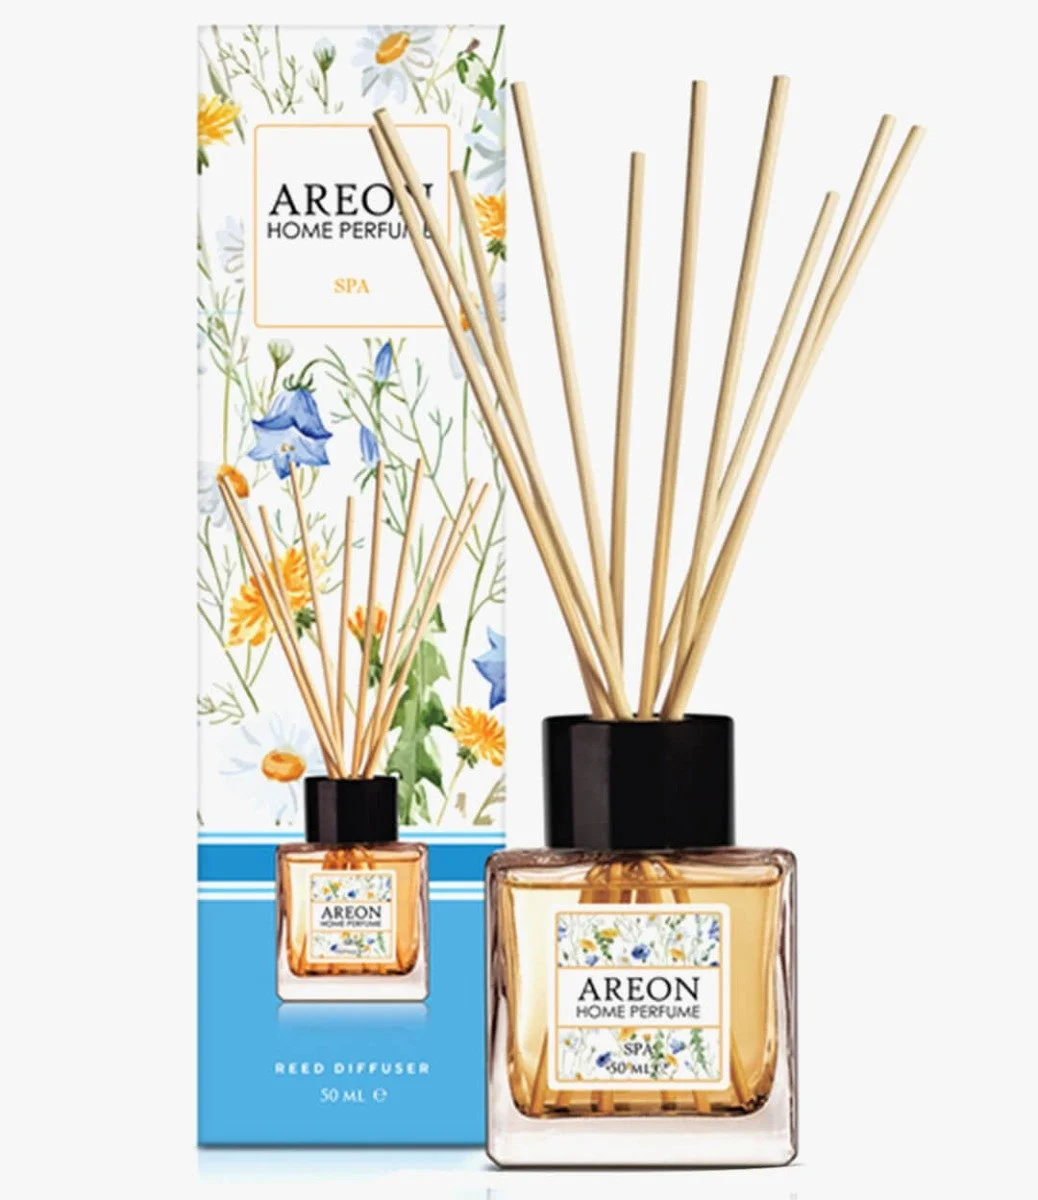 Areon Home Perfumes 50 ml Garden Spa